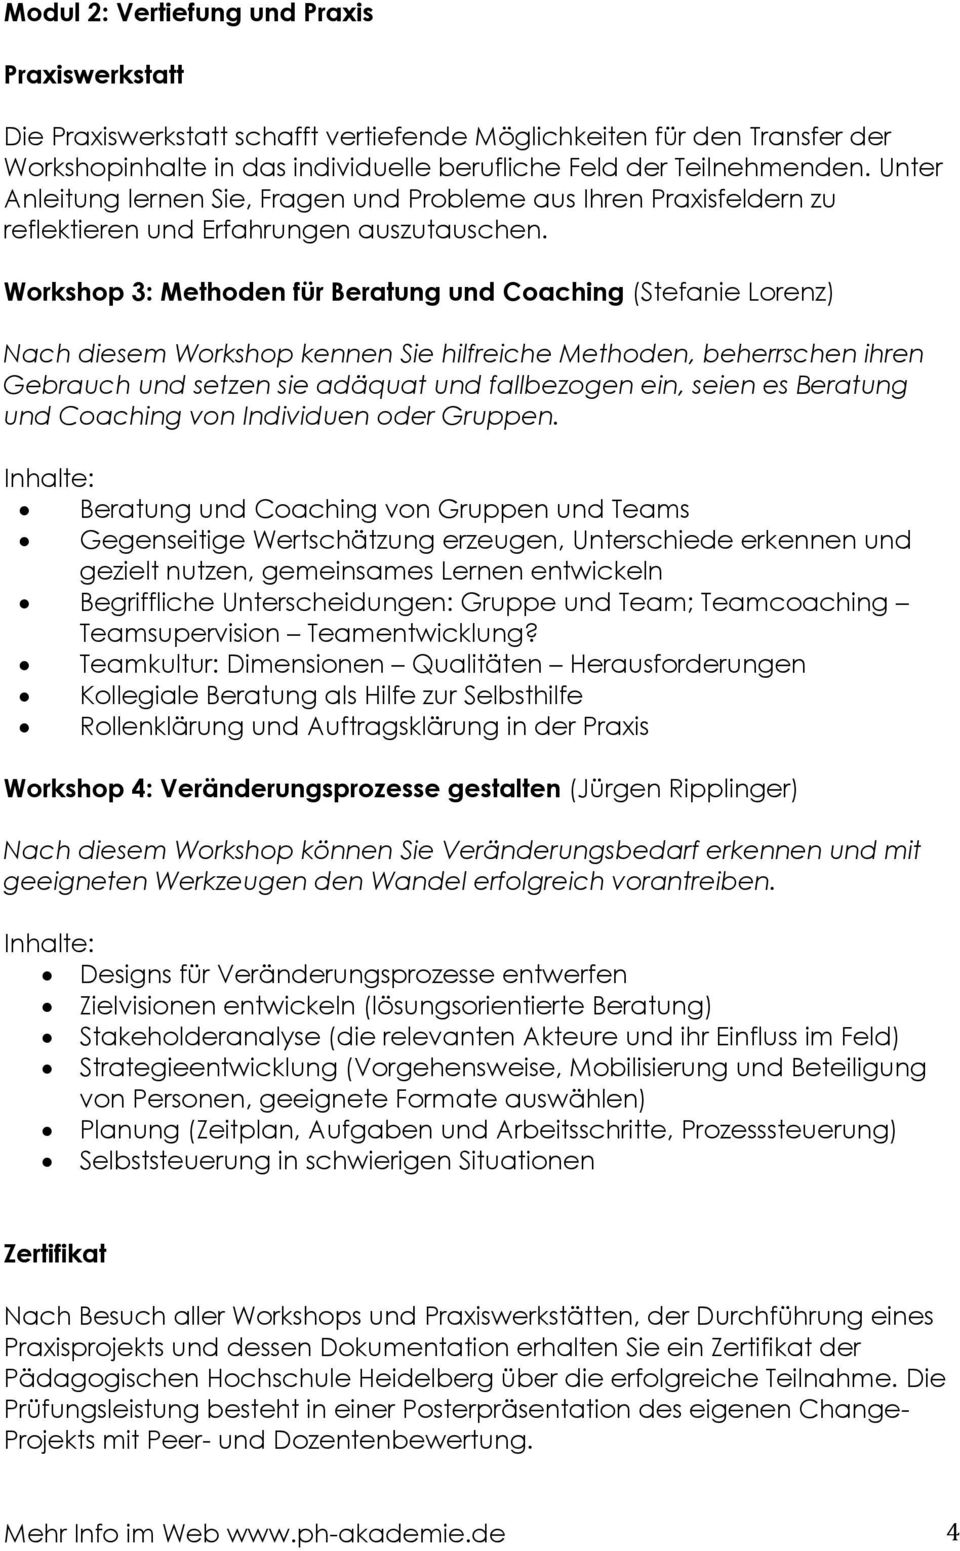 Workshop 3: Methoden für Beratung und Coaching (Stefanie Lorenz) Nach diesem Workshop kennen Sie hilfreiche Methoden, beherrschen ihren Gebrauch und setzen sie adäquat und fallbezogen ein, seien es